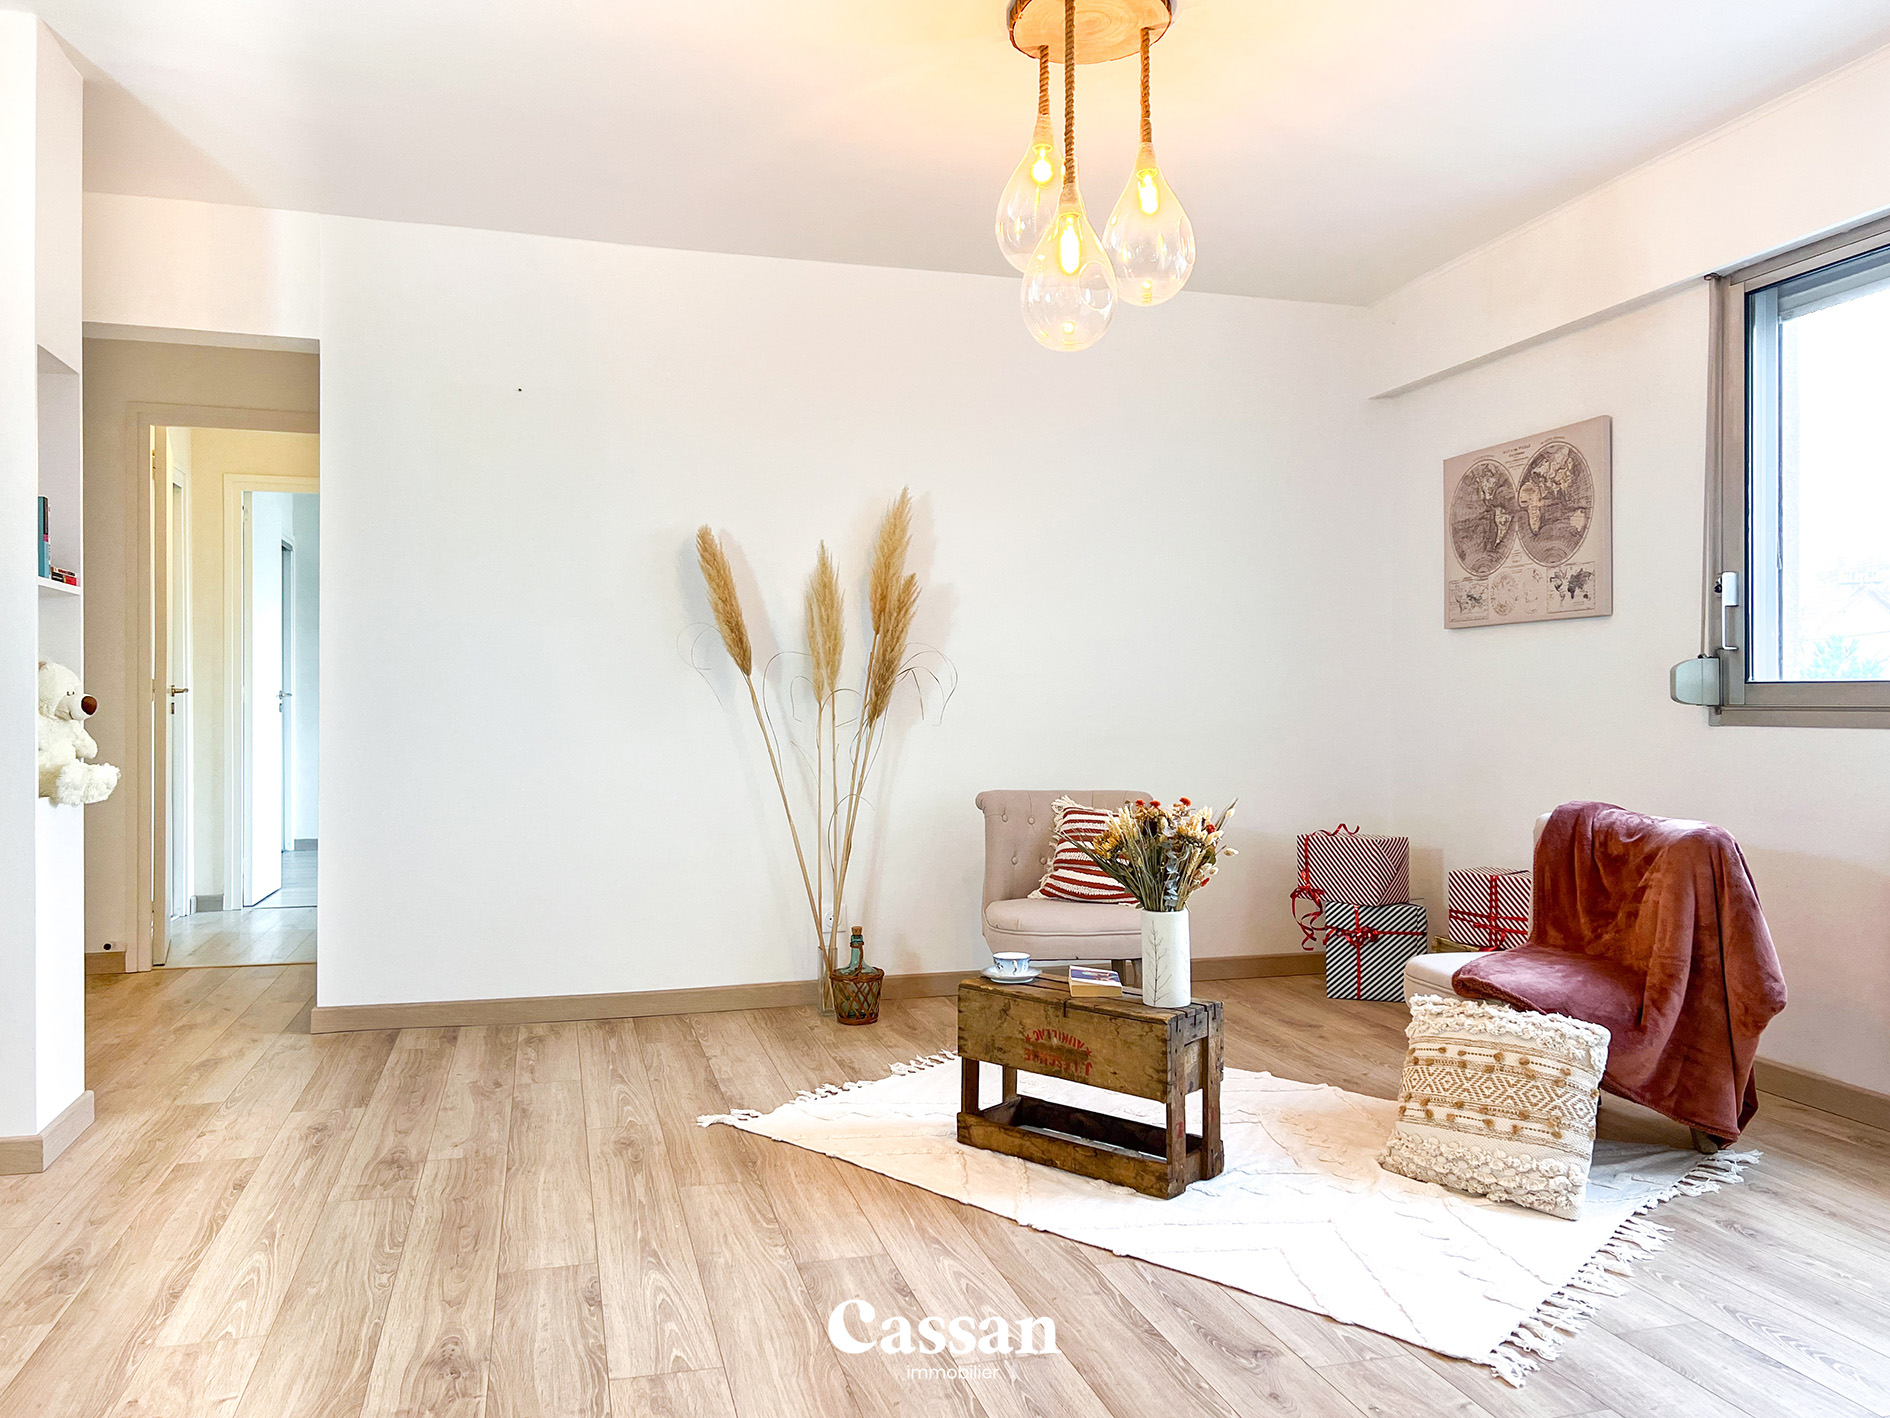 Séjour appartement à vendre Aurillac Cassan immobilier